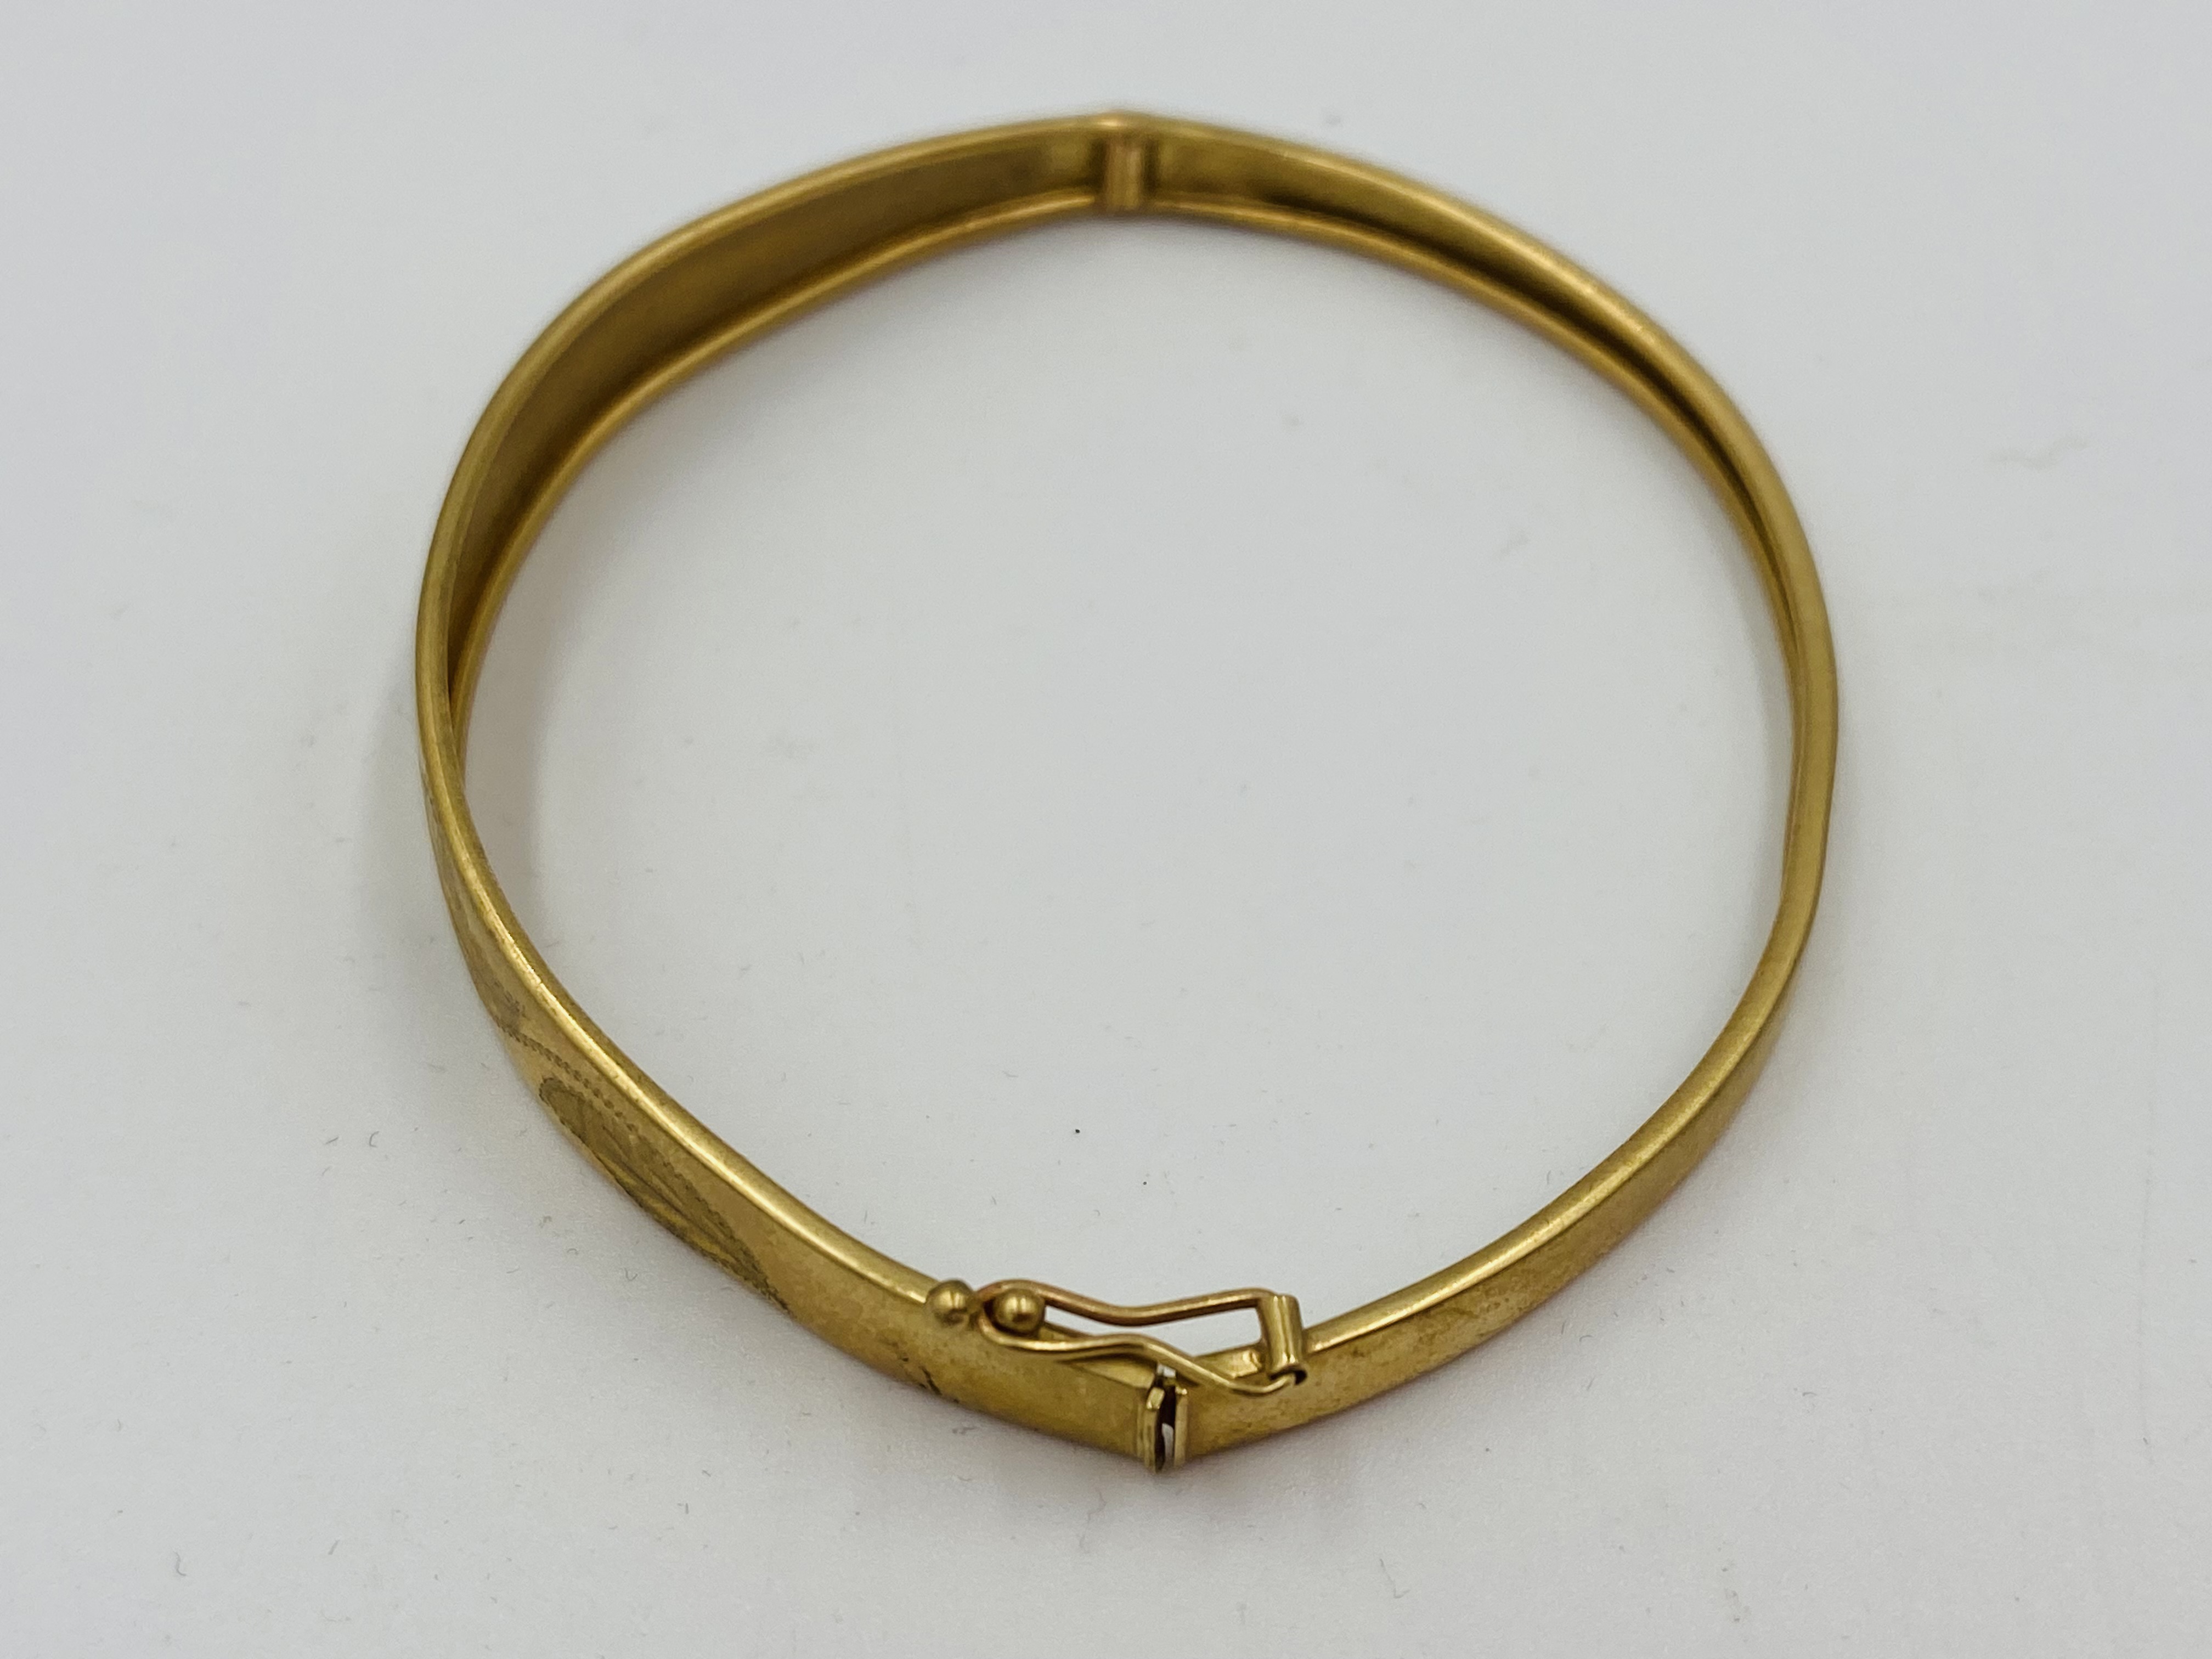 9ct gold bracelet - Image 2 of 3